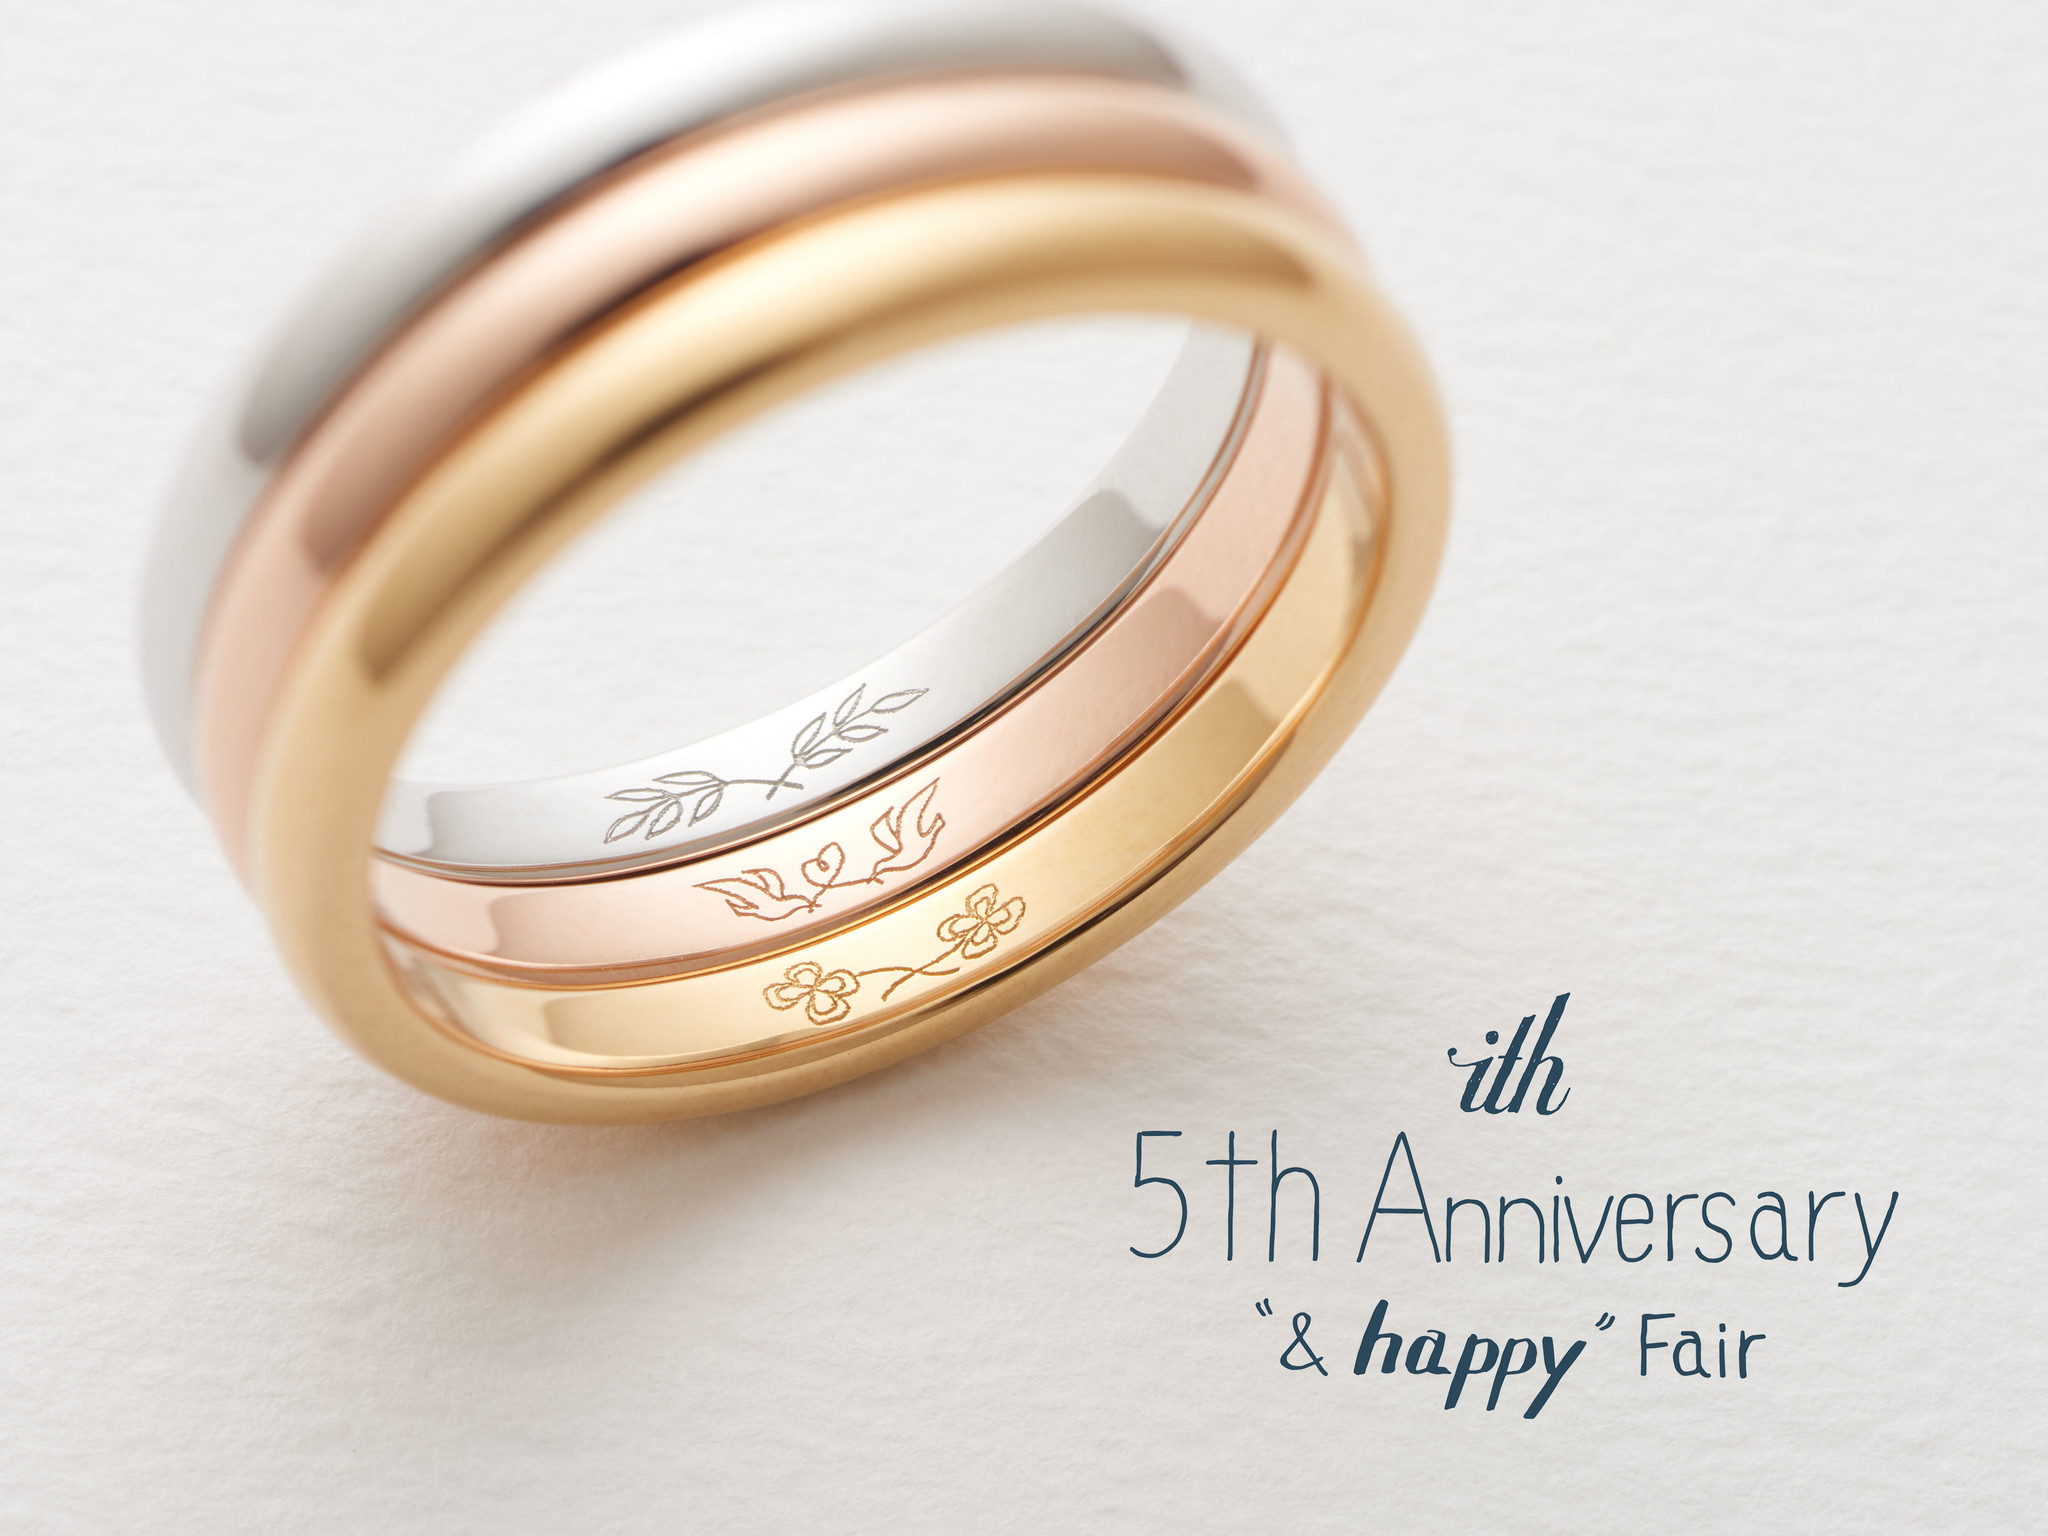 Ith5周年 結婚指輪は幸せのお守り Happy な刻印プレゼント アーツアンドクラフツ株式会社のプレスリリース